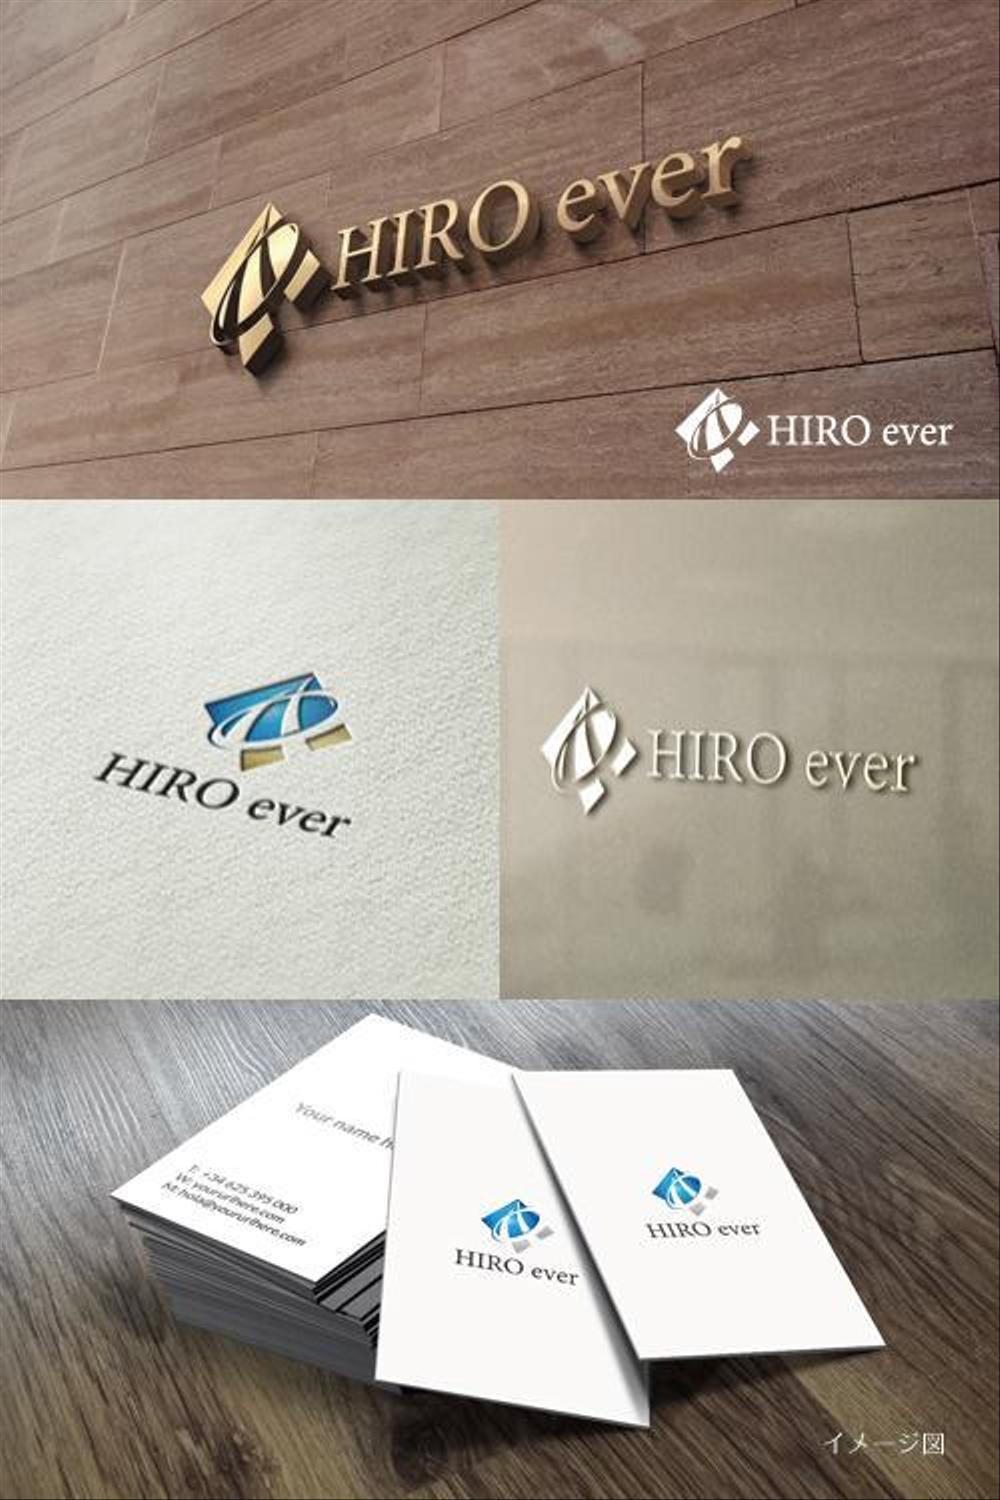 保険調剤薬局の経営「株式会社 HIRO ever」のロゴ